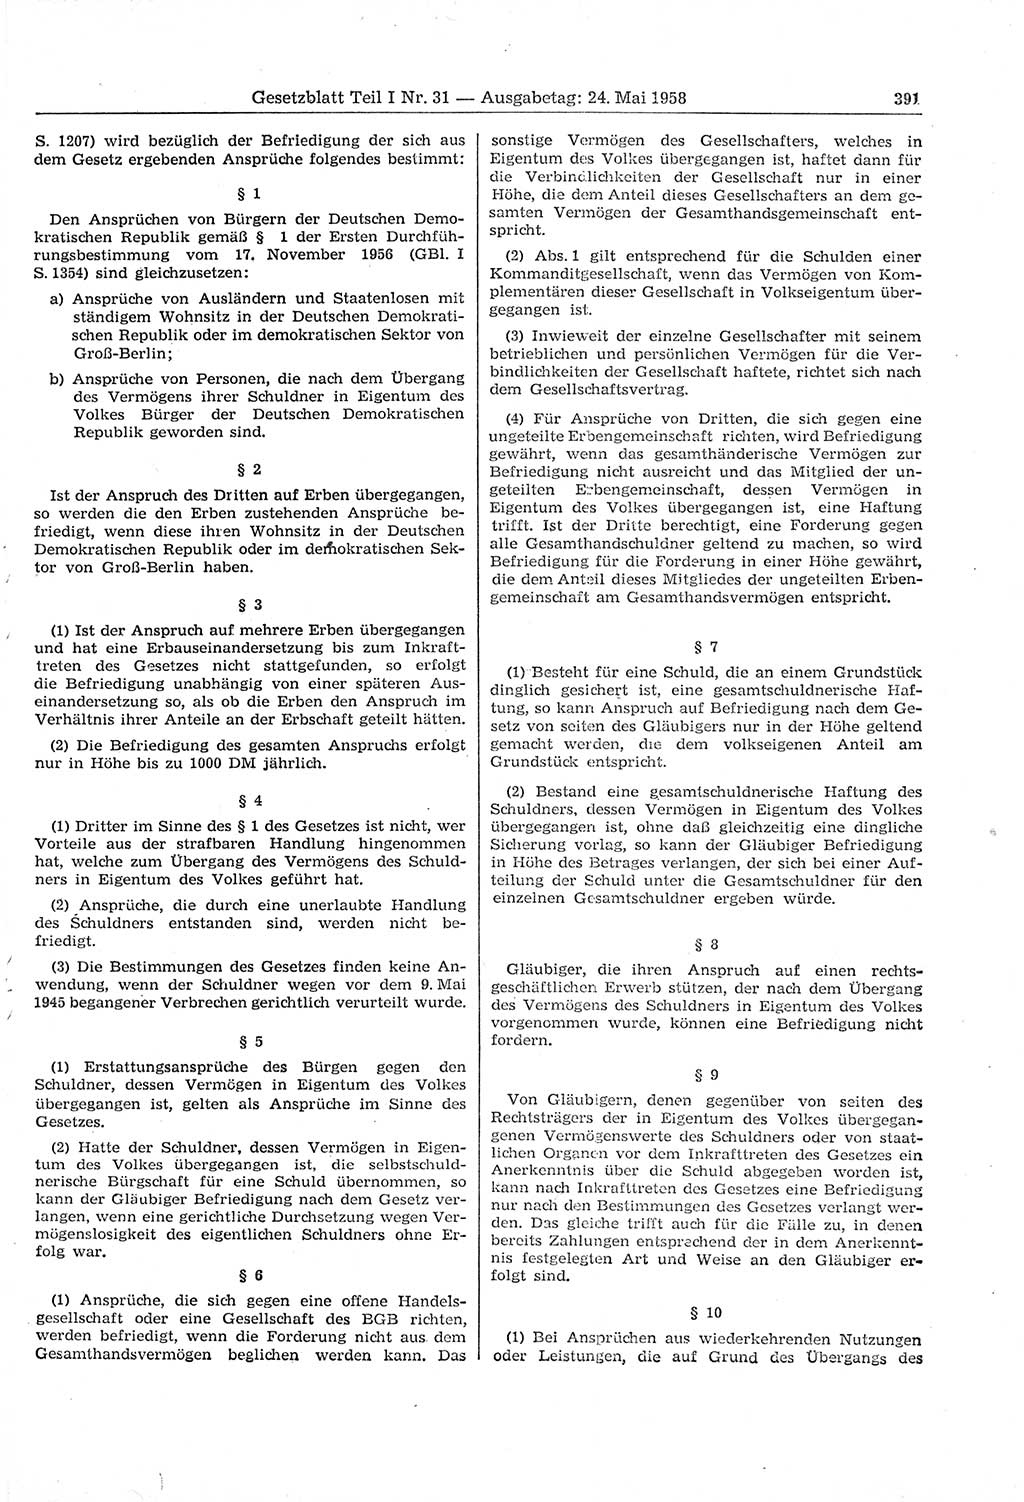 Gesetzblatt (GBl.) der Deutschen Demokratischen Republik (DDR) Teil Ⅰ 1958, Seite 391 (GBl. DDR Ⅰ 1958, S. 391)